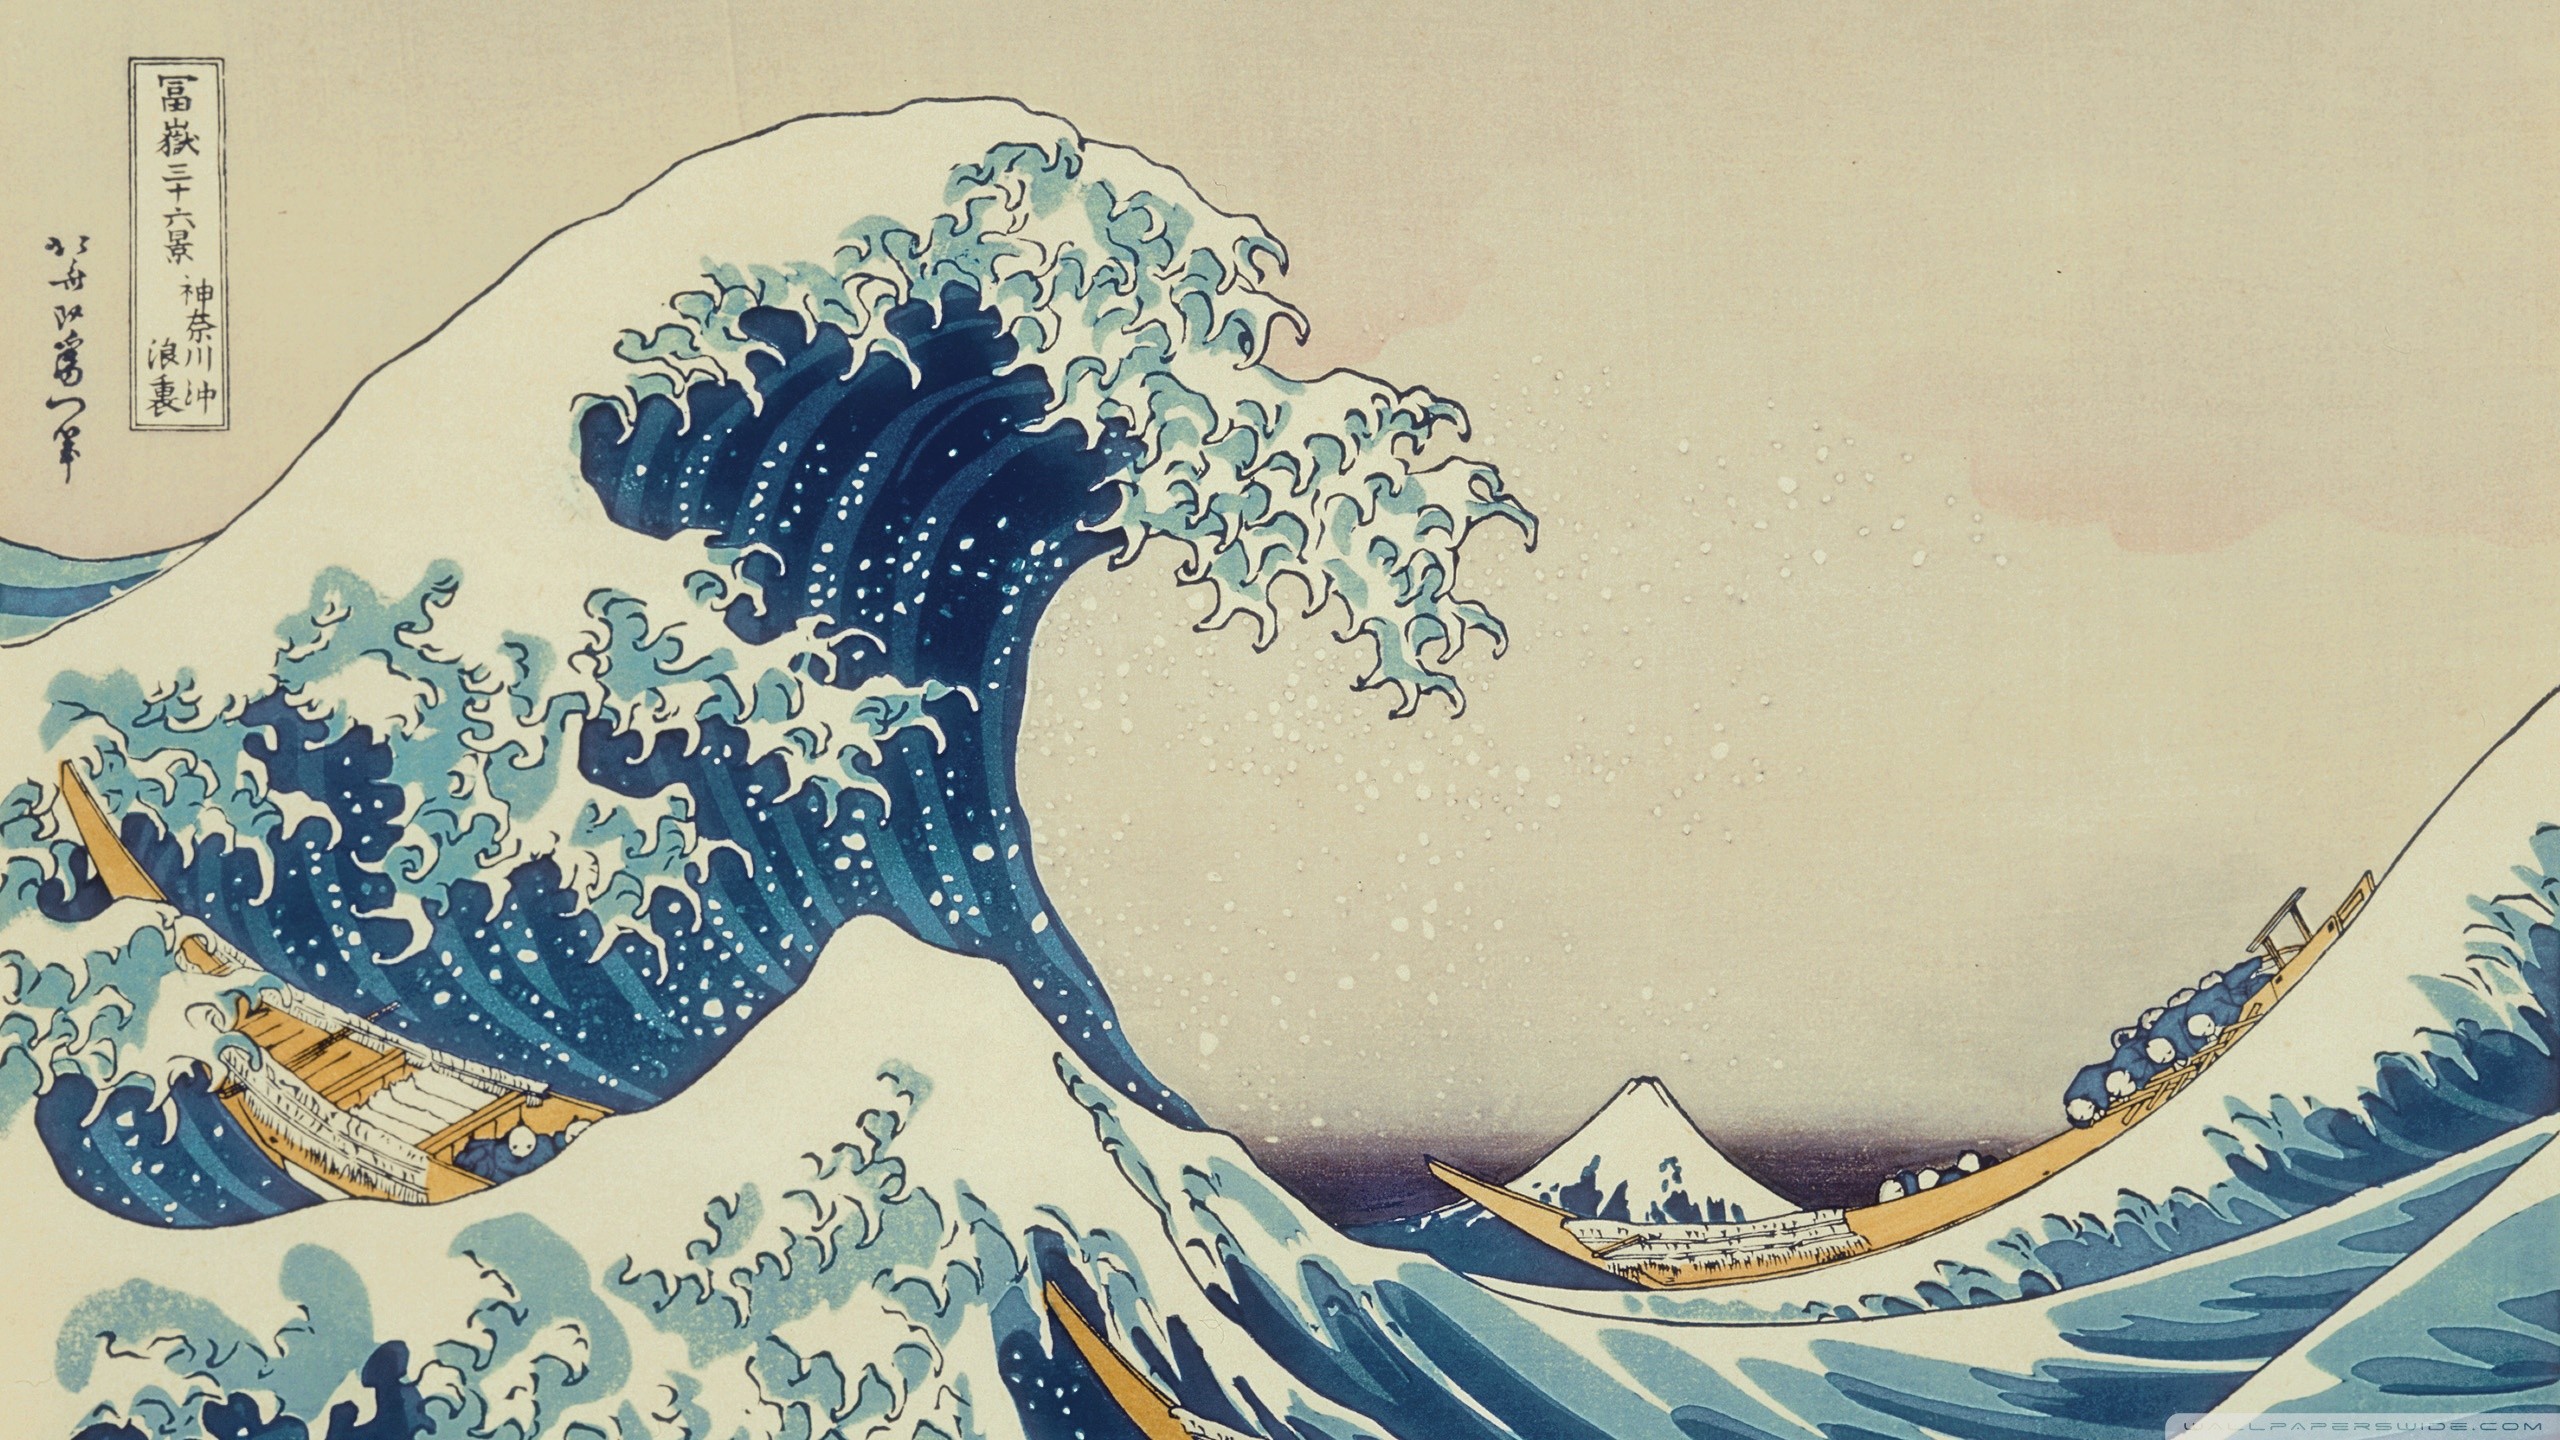 Wide Great Wave Of Kanagawa 2560x1440 Wallpaper Deskt - vrogue.co